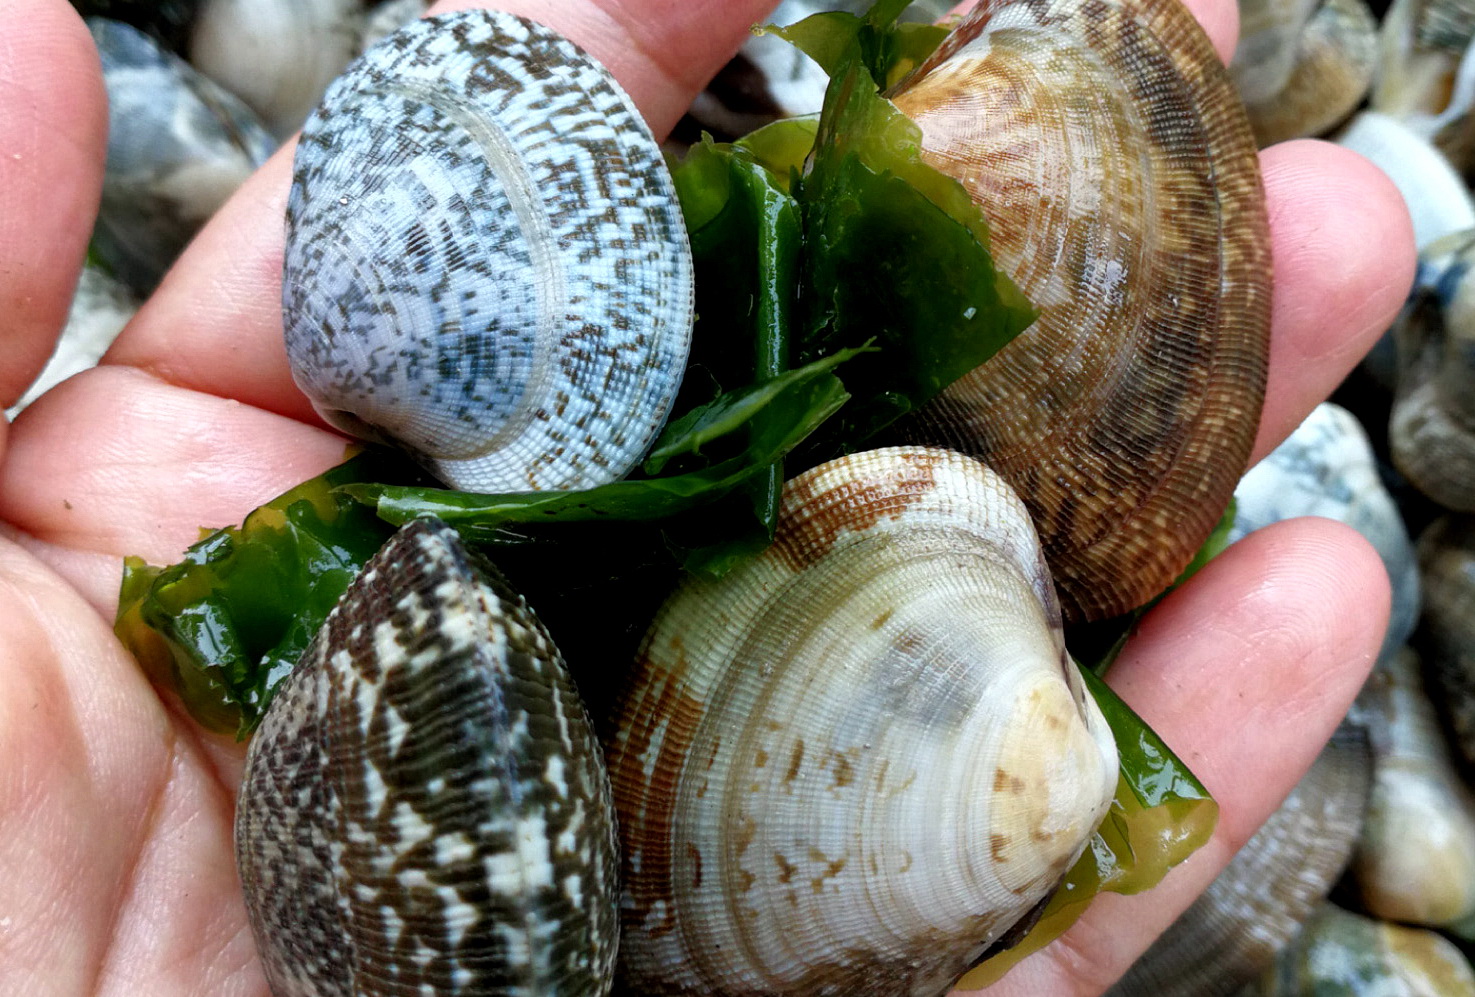 海鲜各种贝类，文蛤、牡蛎、竹蛏、毛蚶……你都了解了吗